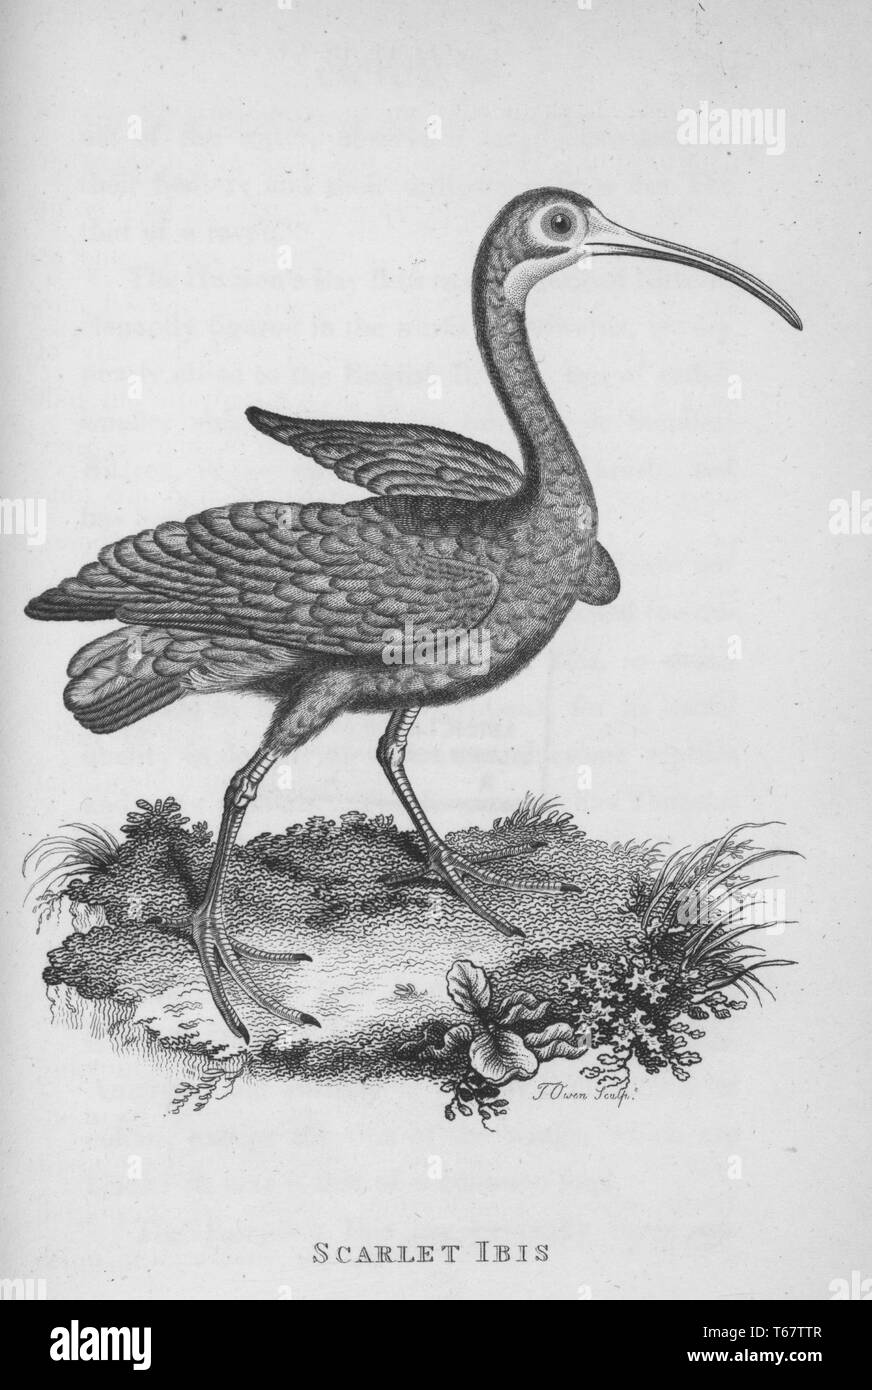 Eine Gravur auf einem scharlachroten Ibis aus dem Buch "Zoologische Vorlesungen an der Royal Institution" von George Shaw, 1809 geliefert. Von der New York Public Library. Stockfoto